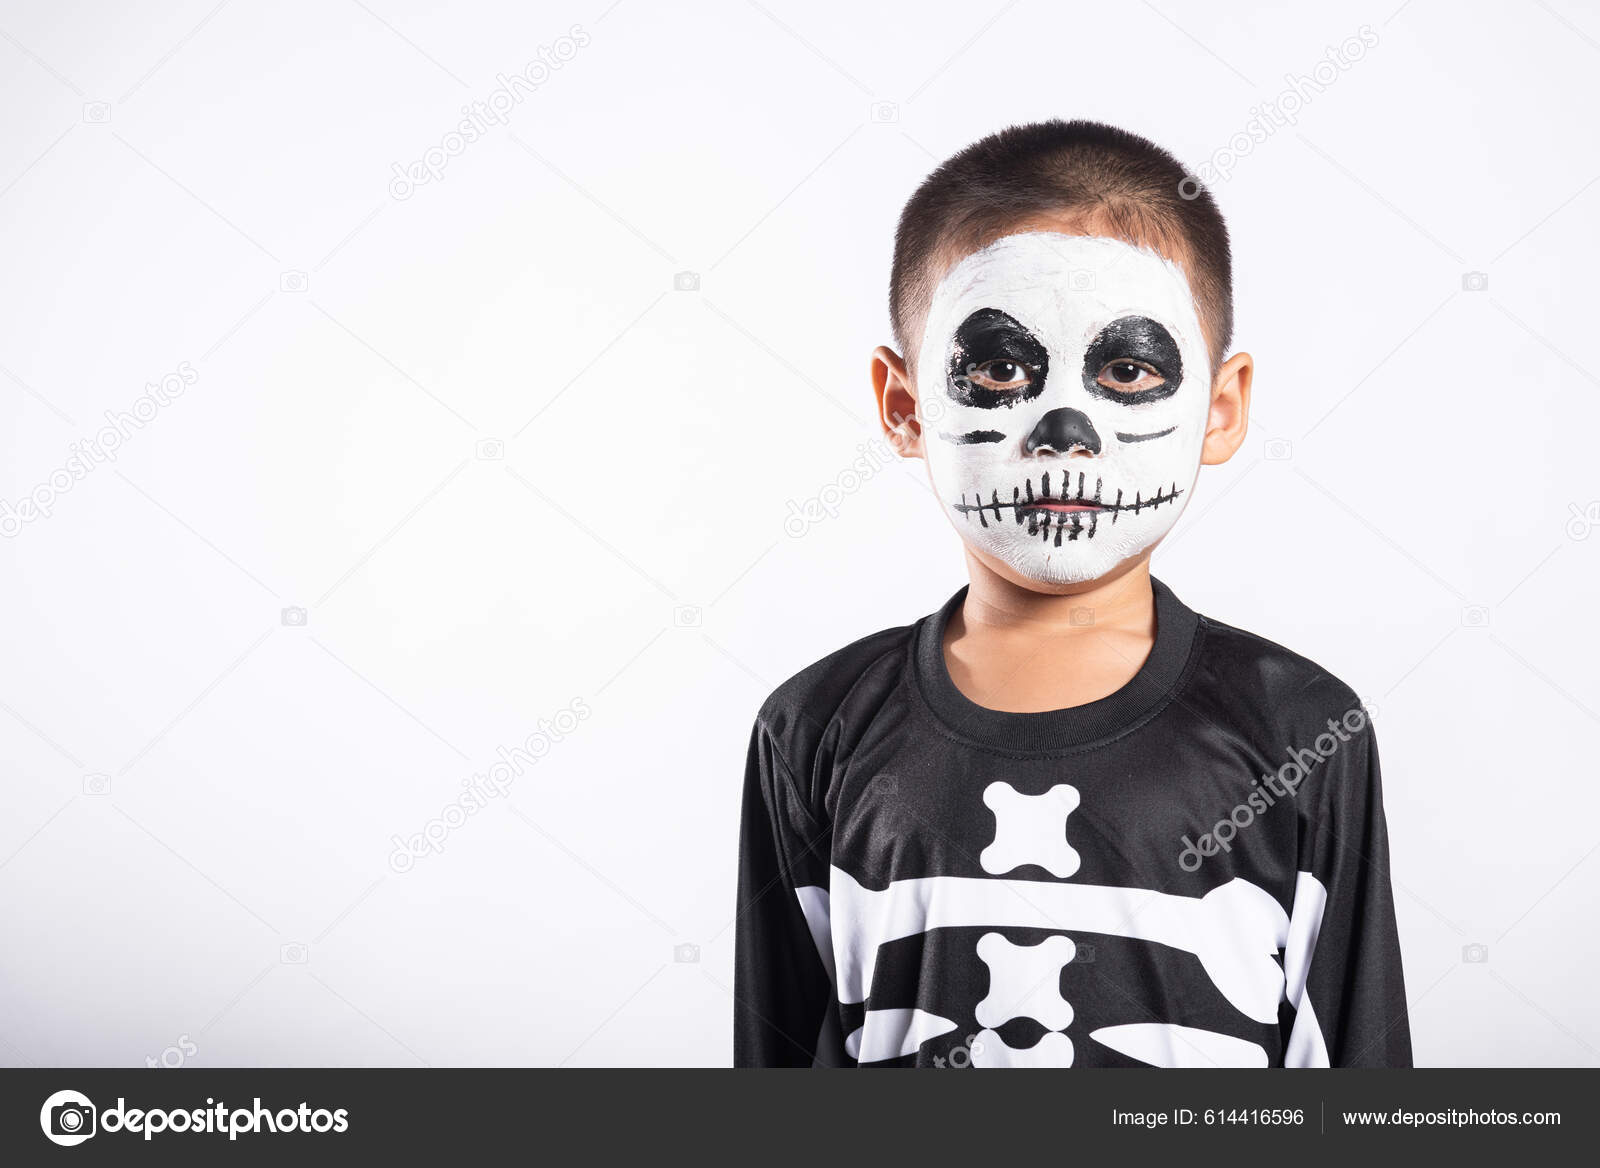 Retrato Boy Wearing Fantasia Halloween Assustador Homem Bonito Adulto  Crianças fotos, imagens de © vadimphoto1@gmail.com #221438094